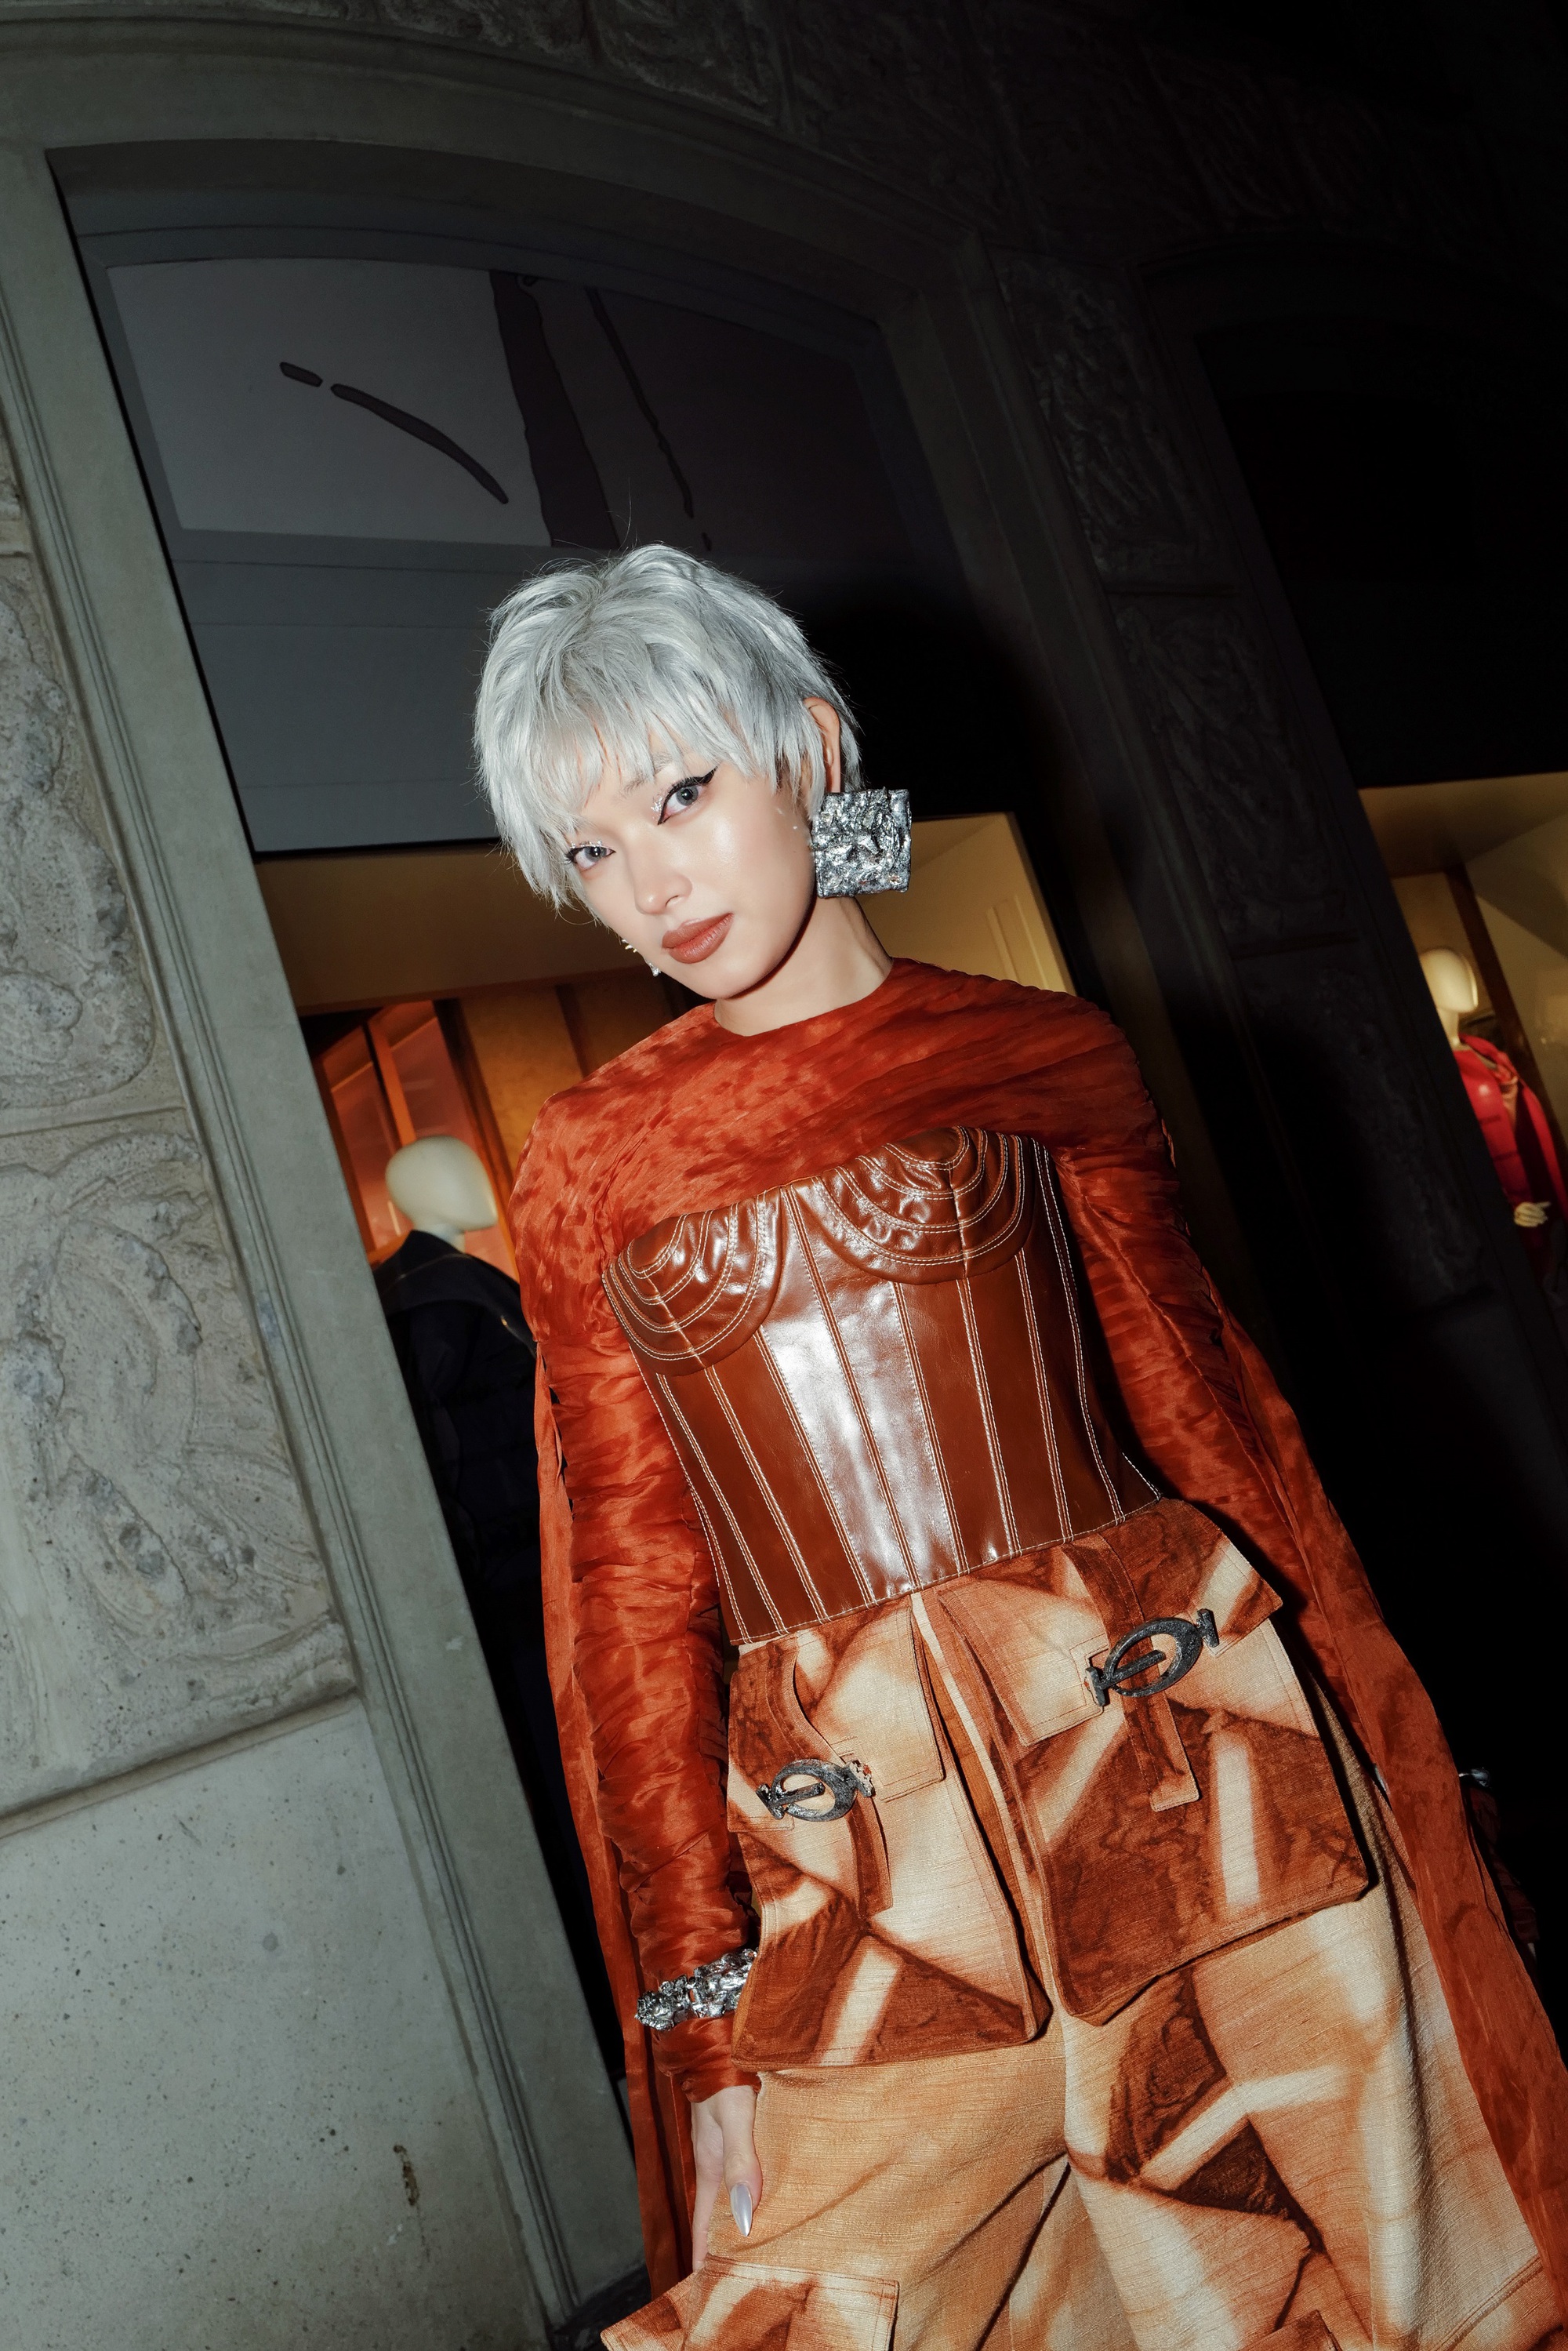 Châu Bùi cá tính trong thiết kế của Phan Đăng Hoàng tại Milan Fashion Week 2023  - Ảnh 6.